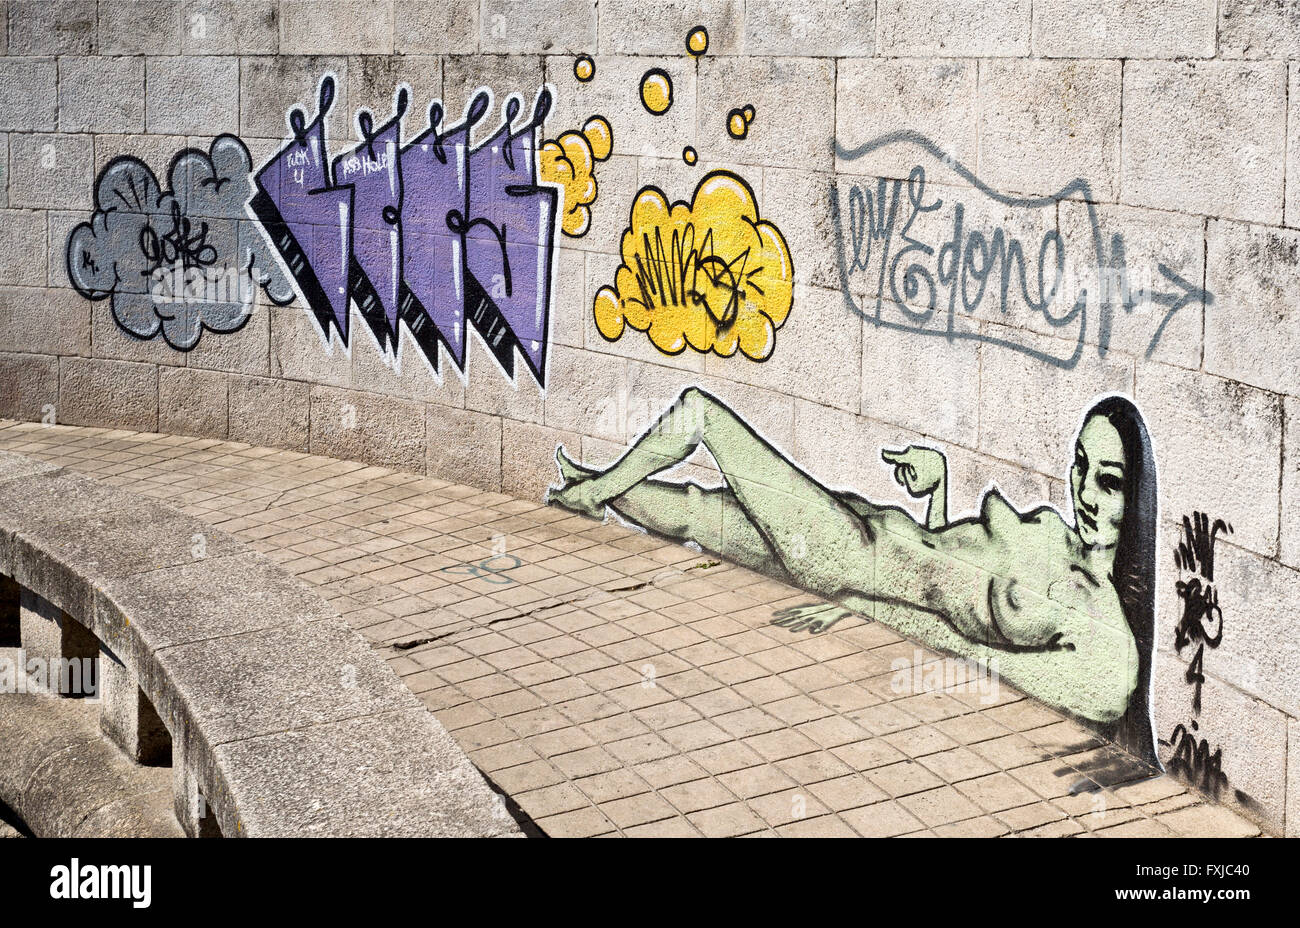 Exemple de l'Art de rue sur un mur public non autorisé au Portugal. Pas de liberté parce que les artistes sont inconnus. Banque D'Images